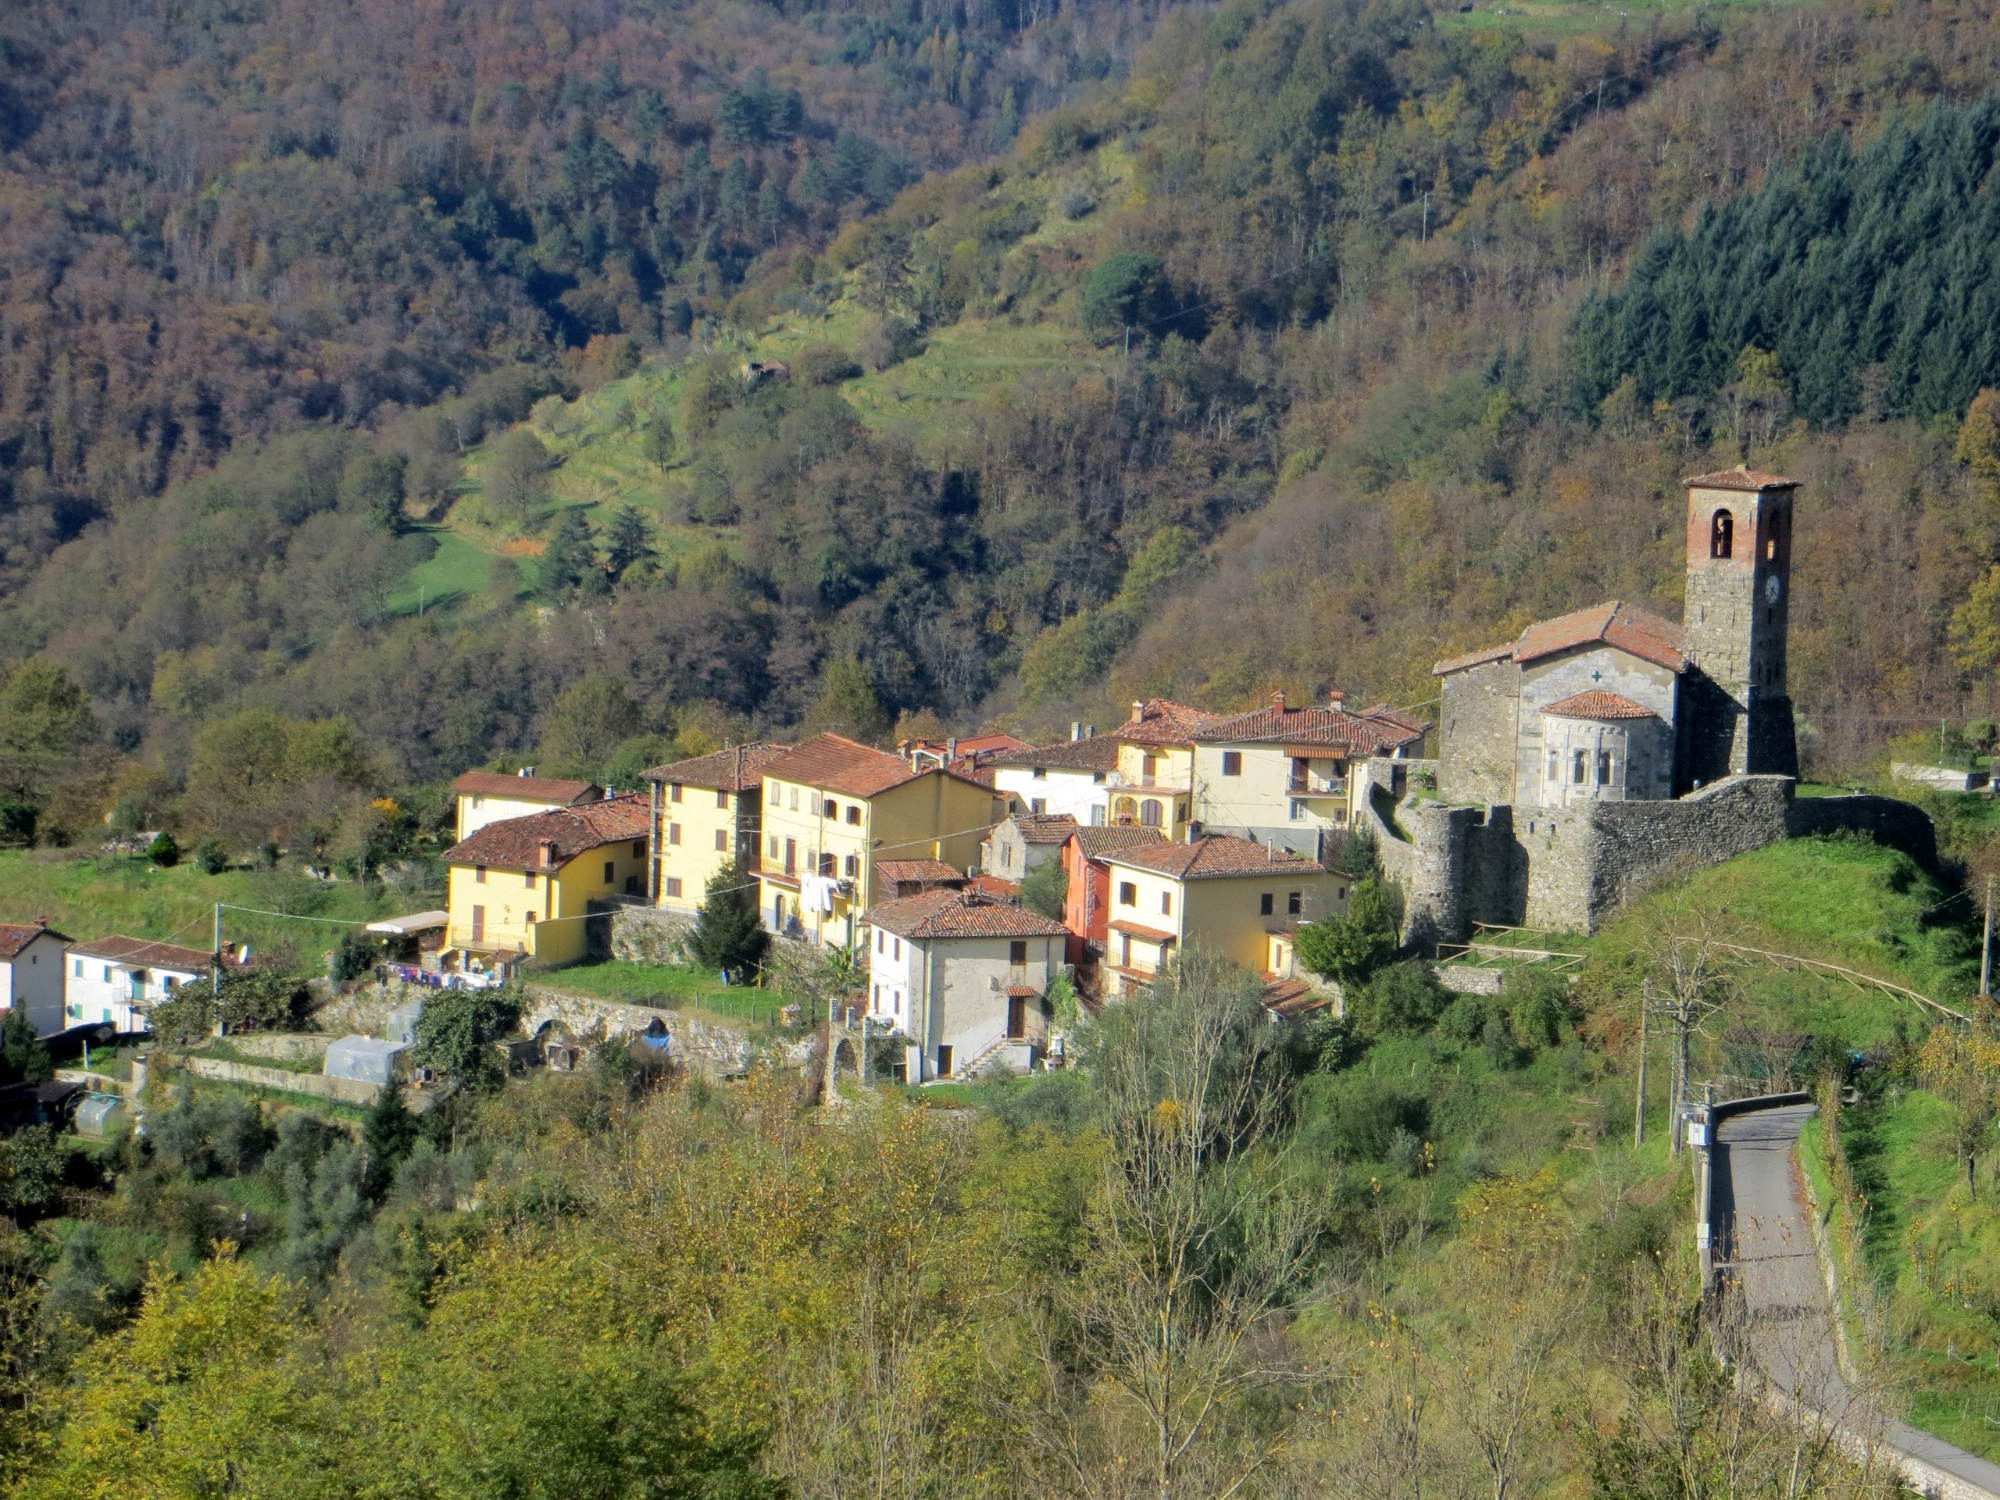 The fortress of Ceserana and Fosciandora